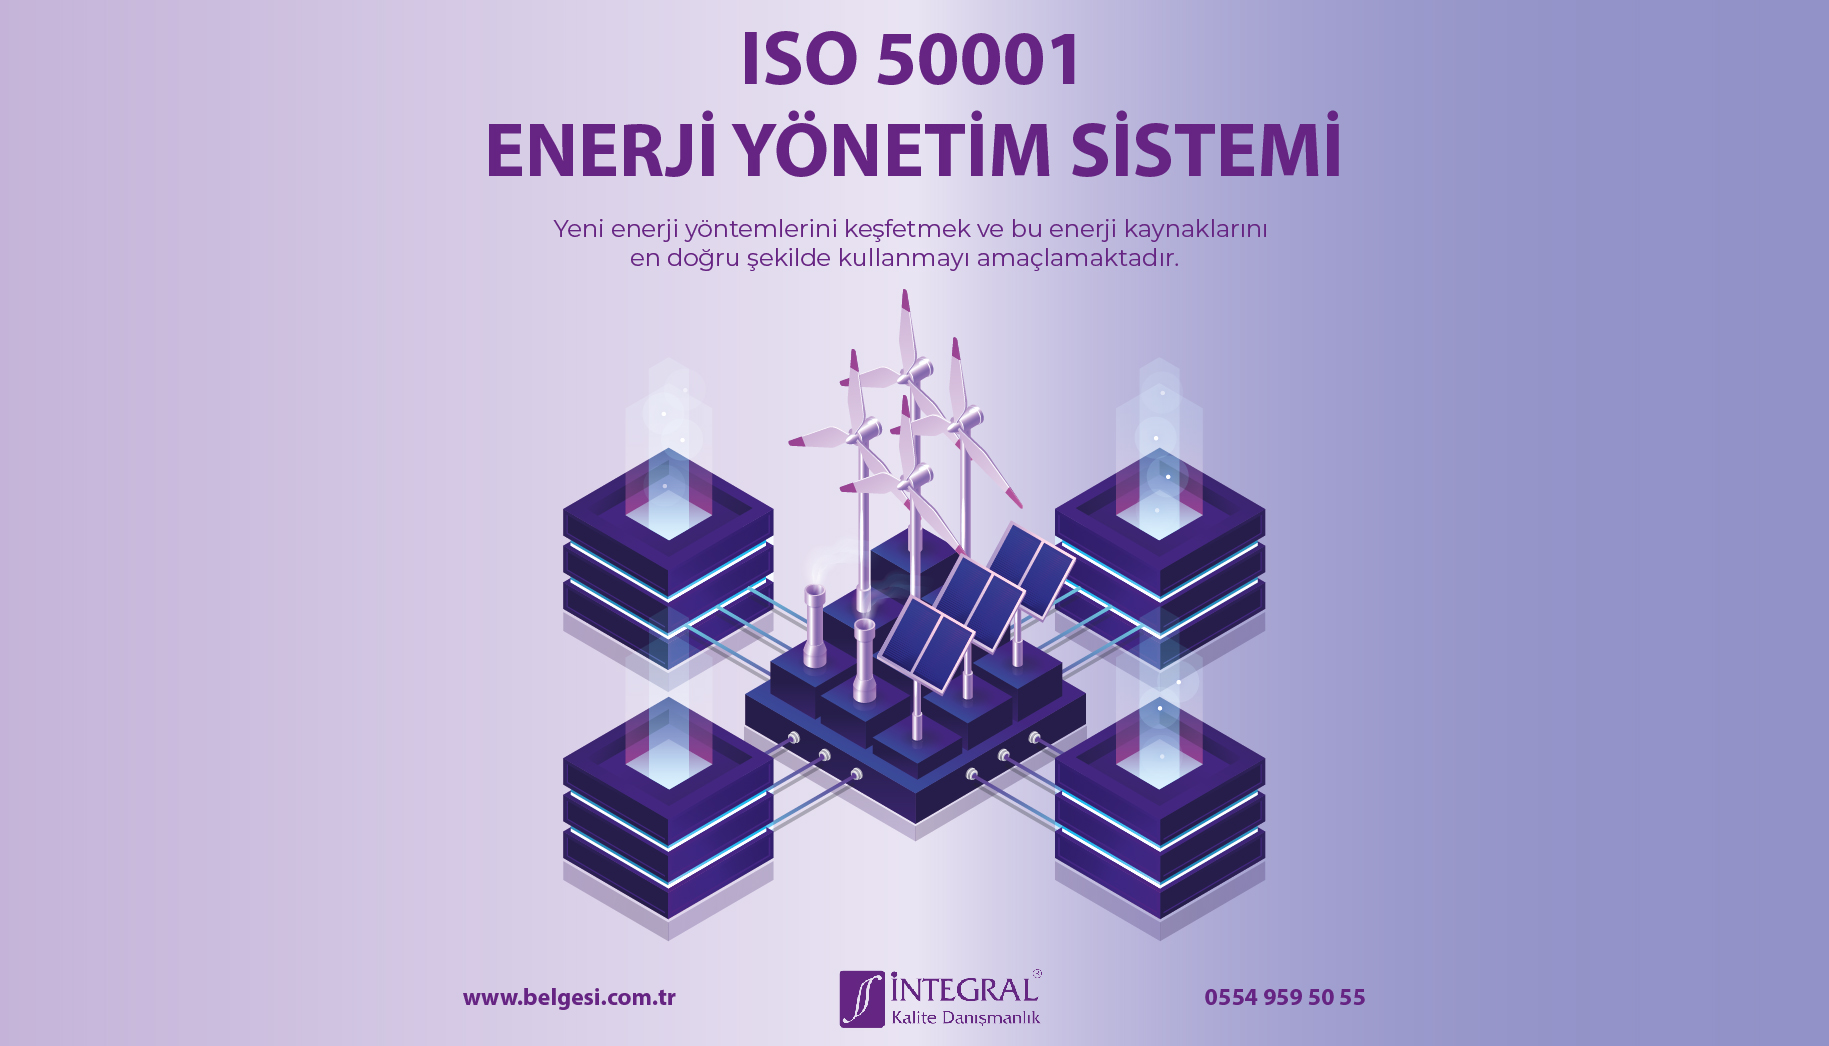 ISO 50001 Enerji Yönetim Sistemi - ISO 50001 Belgesi Nedir? ISO 50001 Enerji Yönetim Sistemi Belgesi- ISO 50001 Enerji Yönetim Sisteminin Faydaları - ISO 50001 Belgesi Kimler Almalıdır? - ISO 50001 Belgesinin Alınması